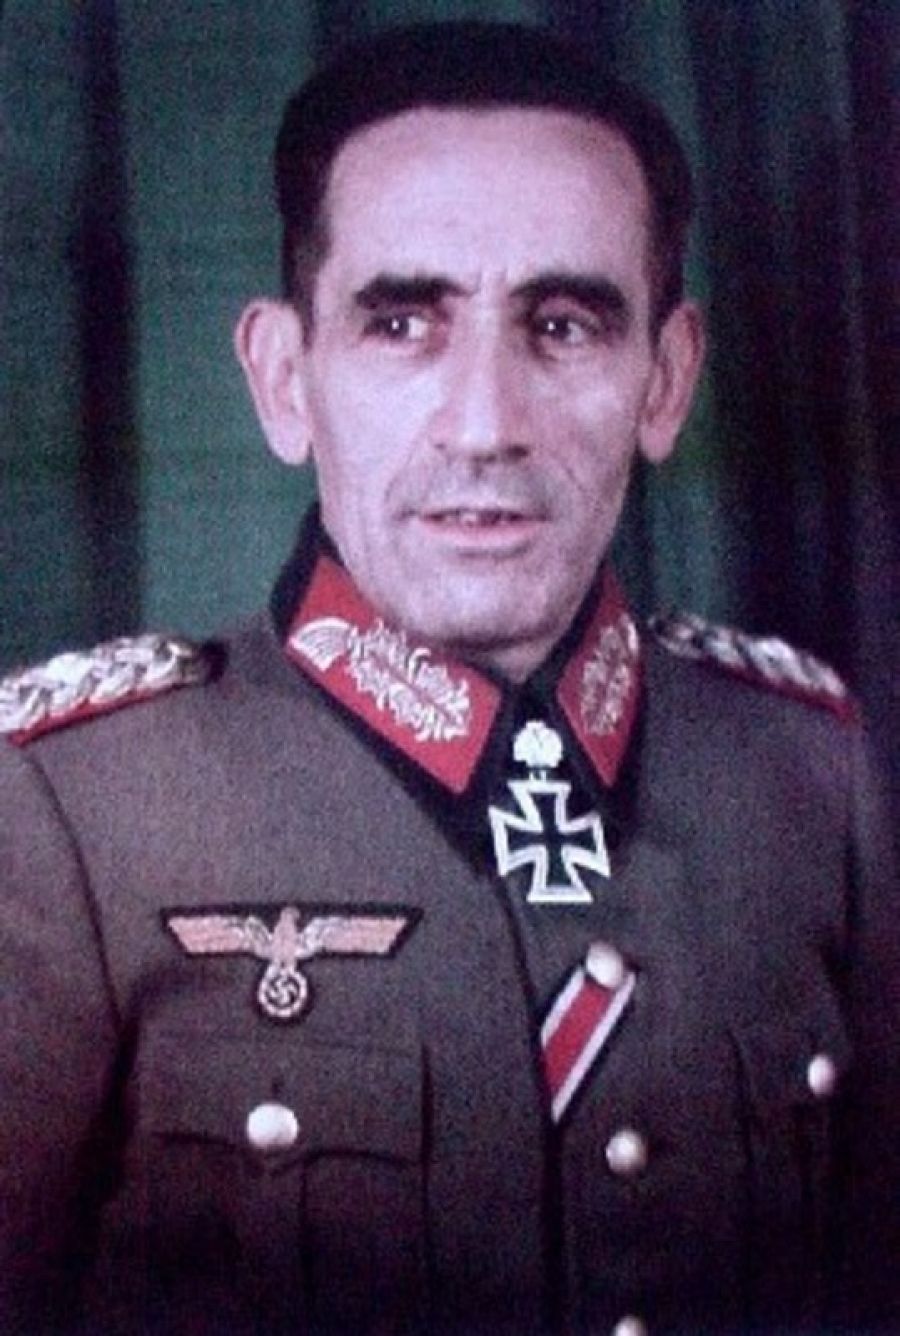 El comandante la División Azul Agustín Muñoz Grandes fue condecorado por Adolf Hitler con la Cruz de Hierro tras regresar del frente ruso. Franco le nombró vicepresidente del gobierno en 1962